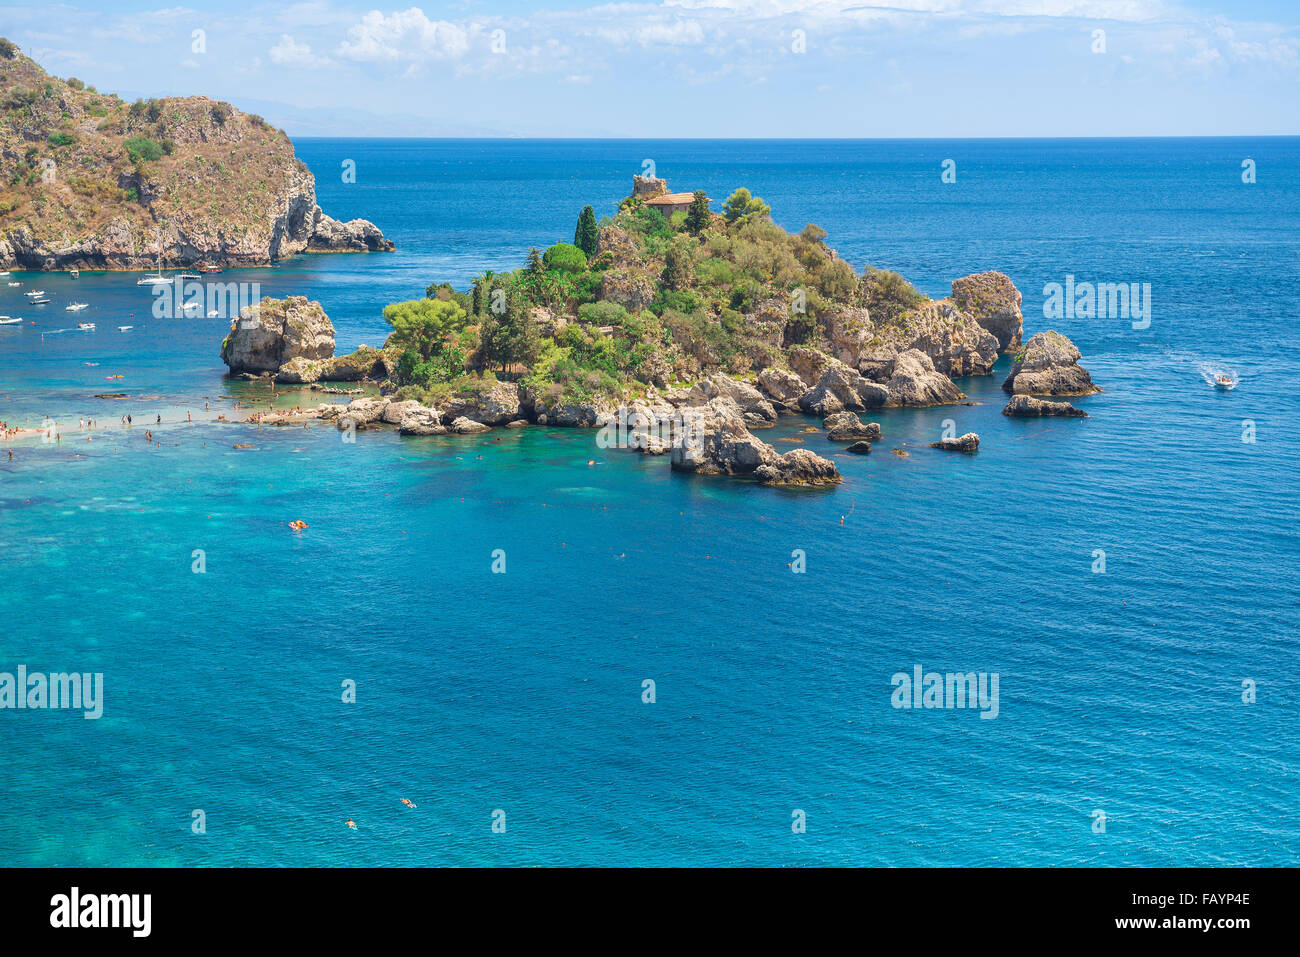 Sicile île, vue en été de la petite île connue sous le nom d'Isola Bella, située à côté de la plage de Mazzaro, en dessous de la station balnéaire de Taormina, Sicile. Banque D'Images